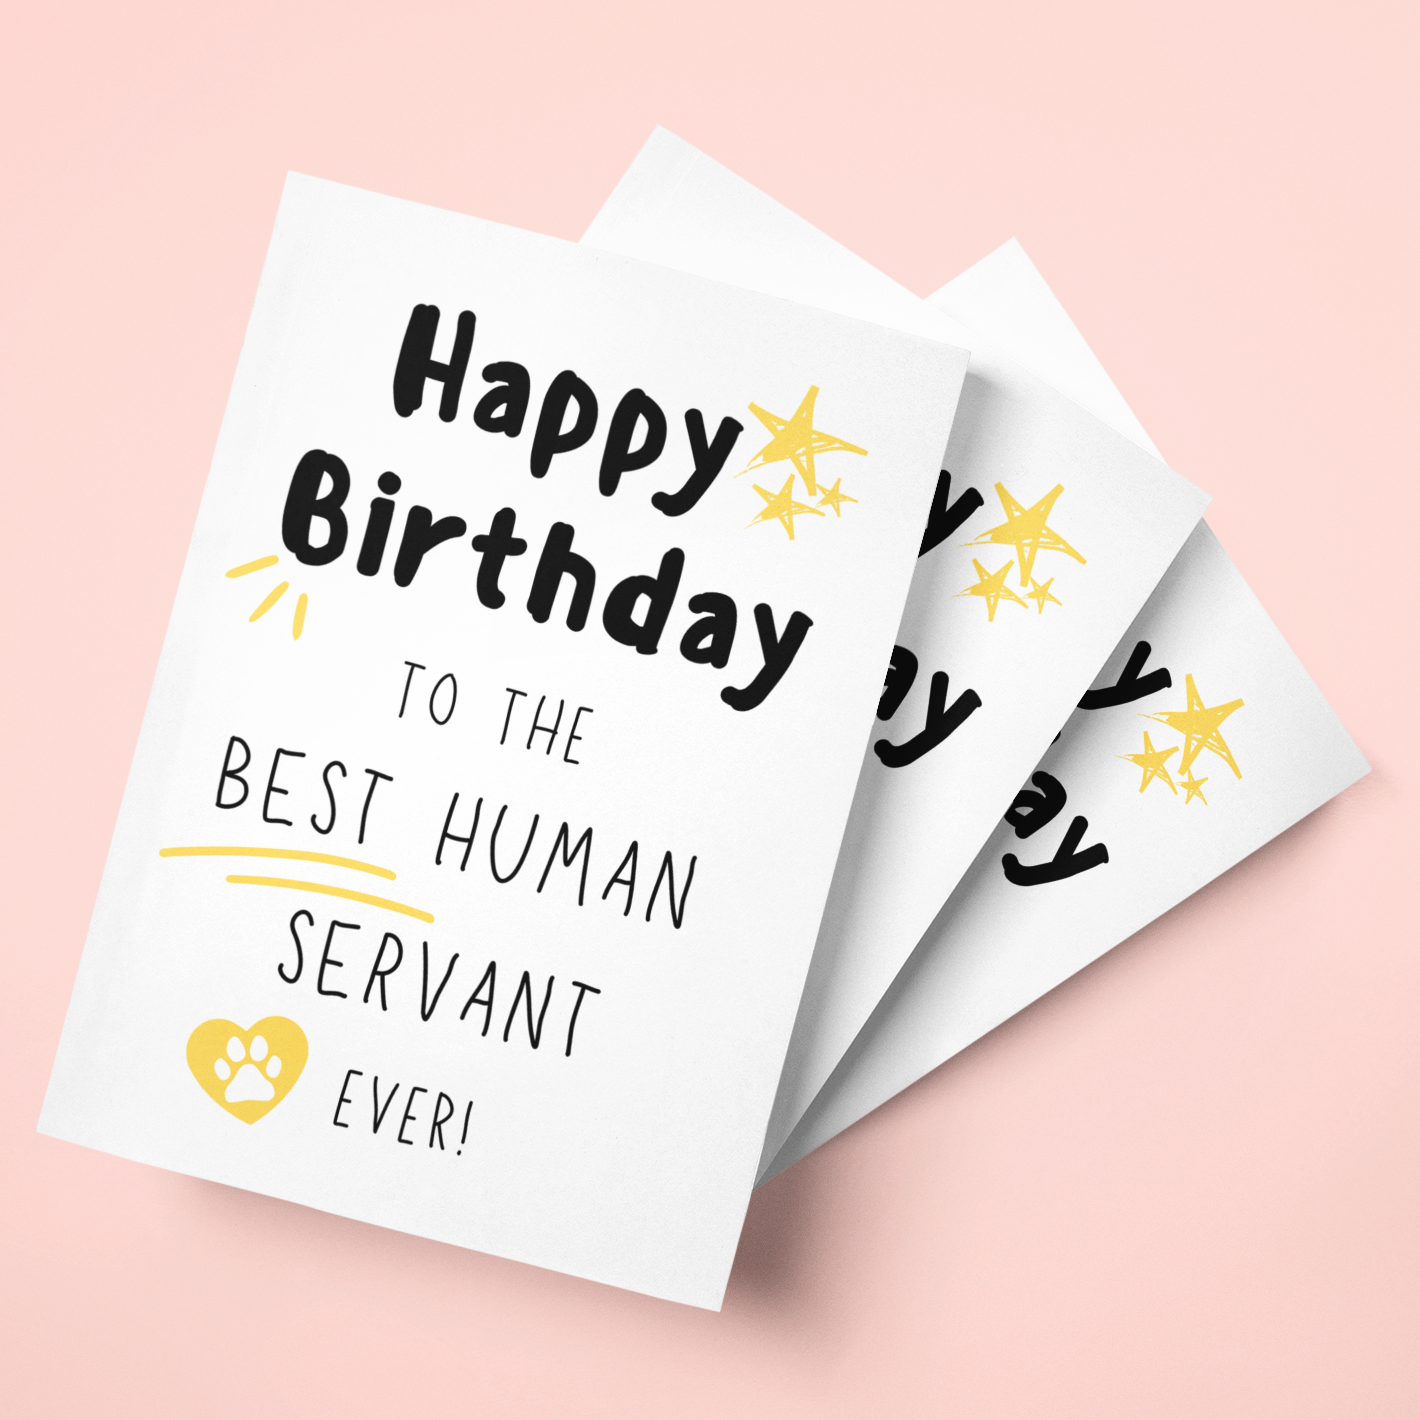 Human Servant Card